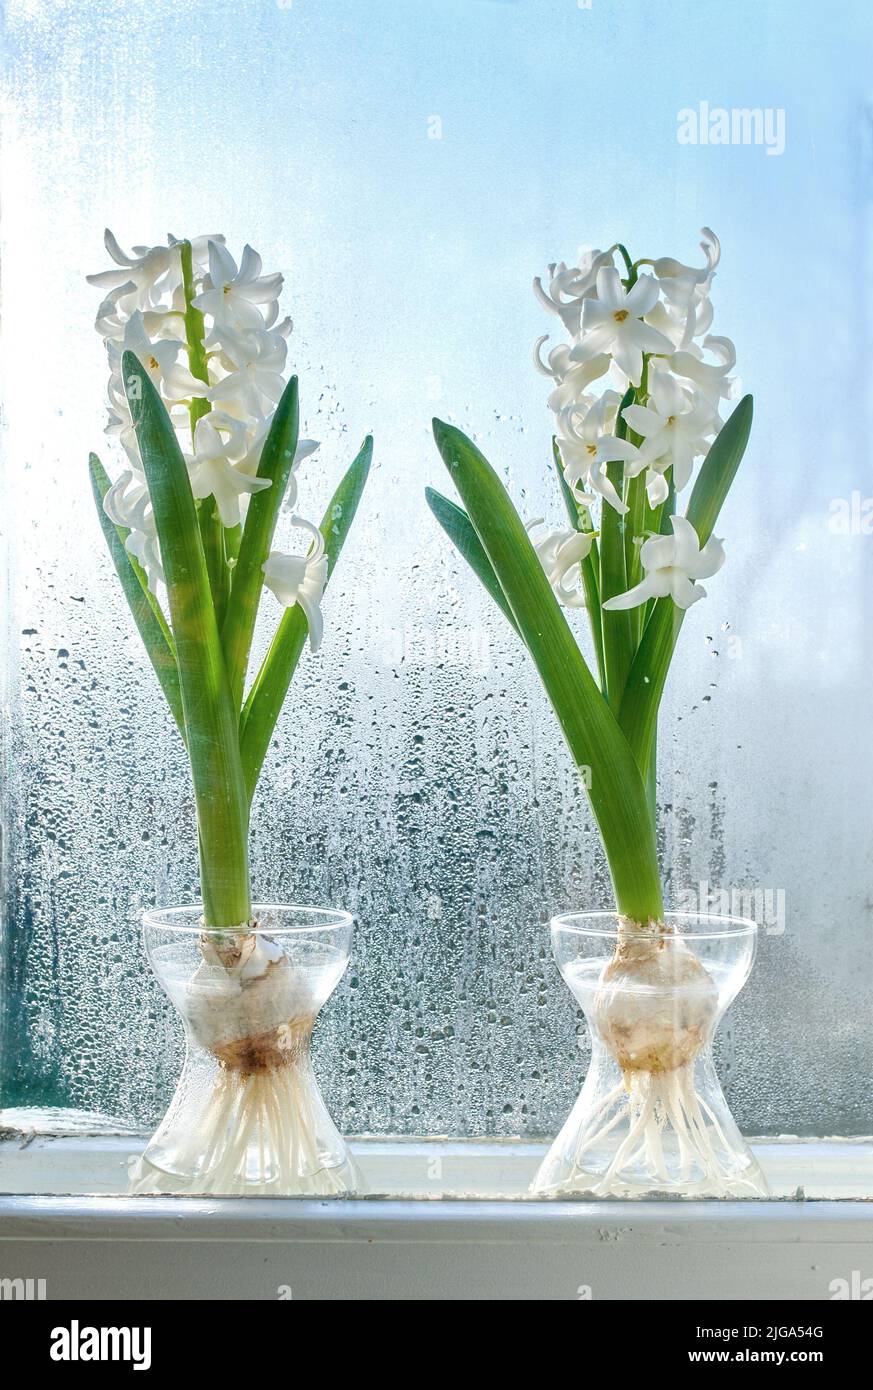 Nahaufnahme des Crocus, der im Süßwasser wächst, Pflanze auf einer Fensterbank. Zwei weiße Blumensträuße, die die Schönheit der Natur und das friedliche Ambiente noch weiter erhöhen Stockfoto